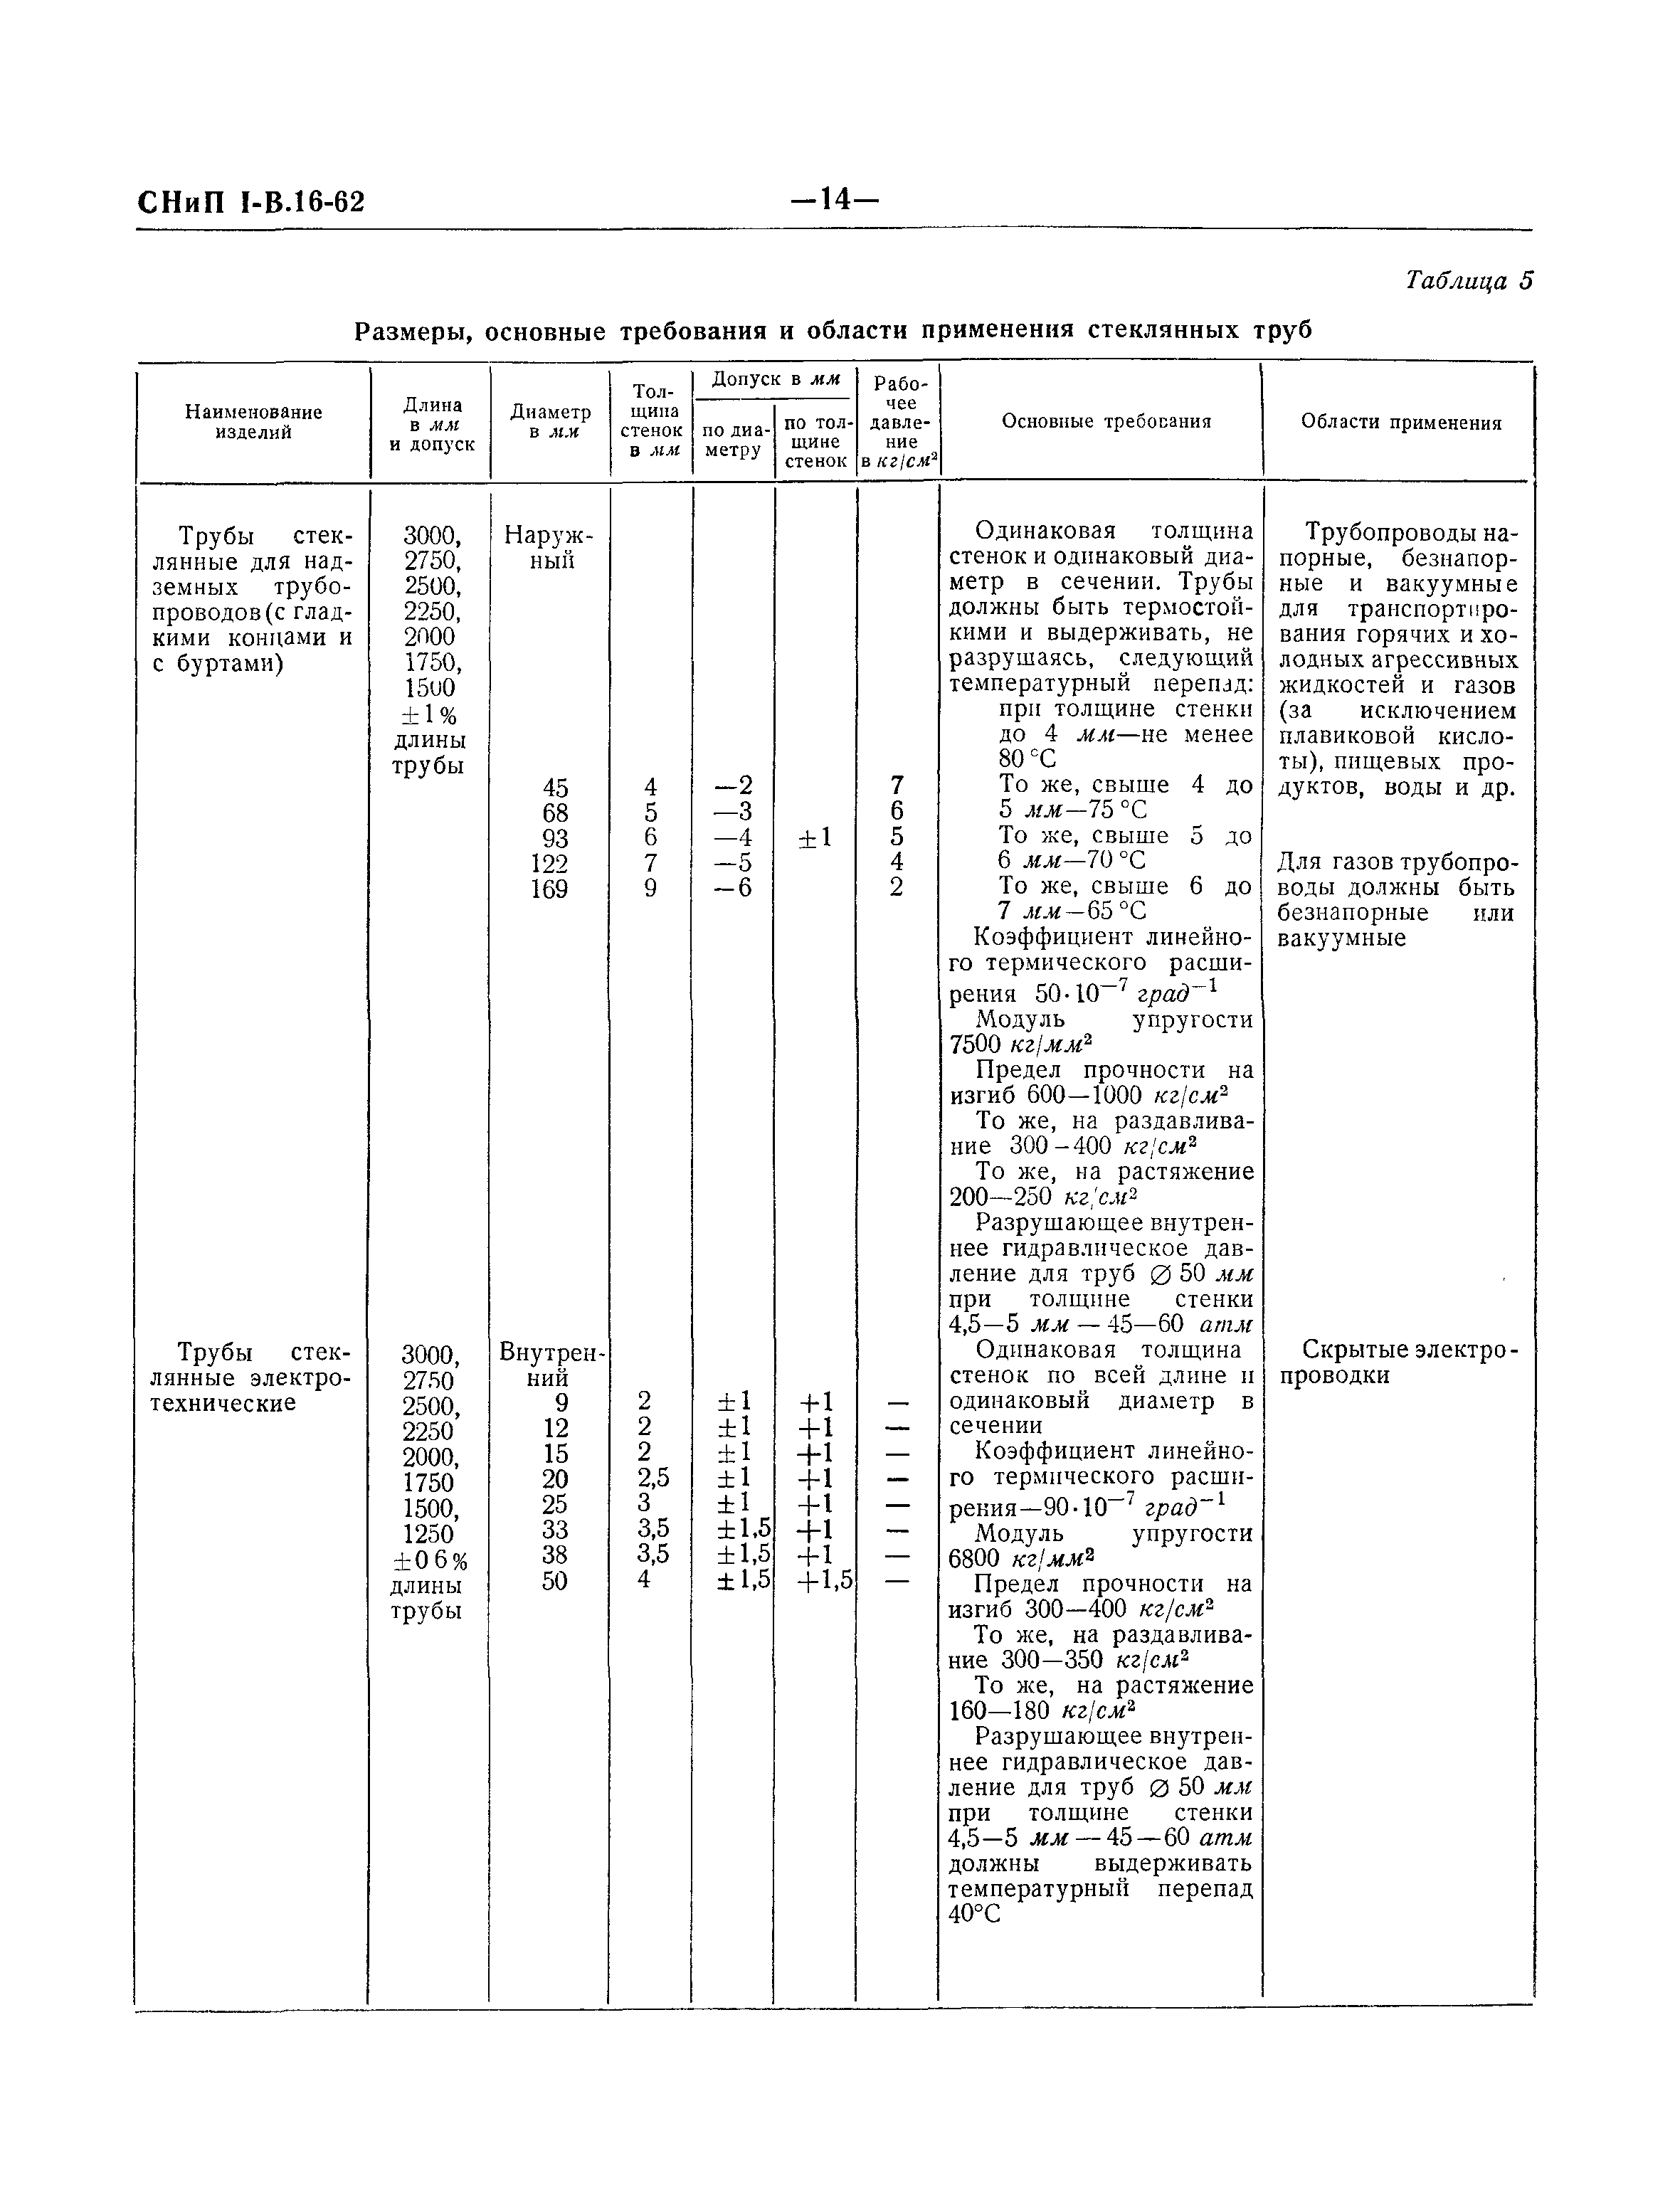 СНиП I-В.16-62